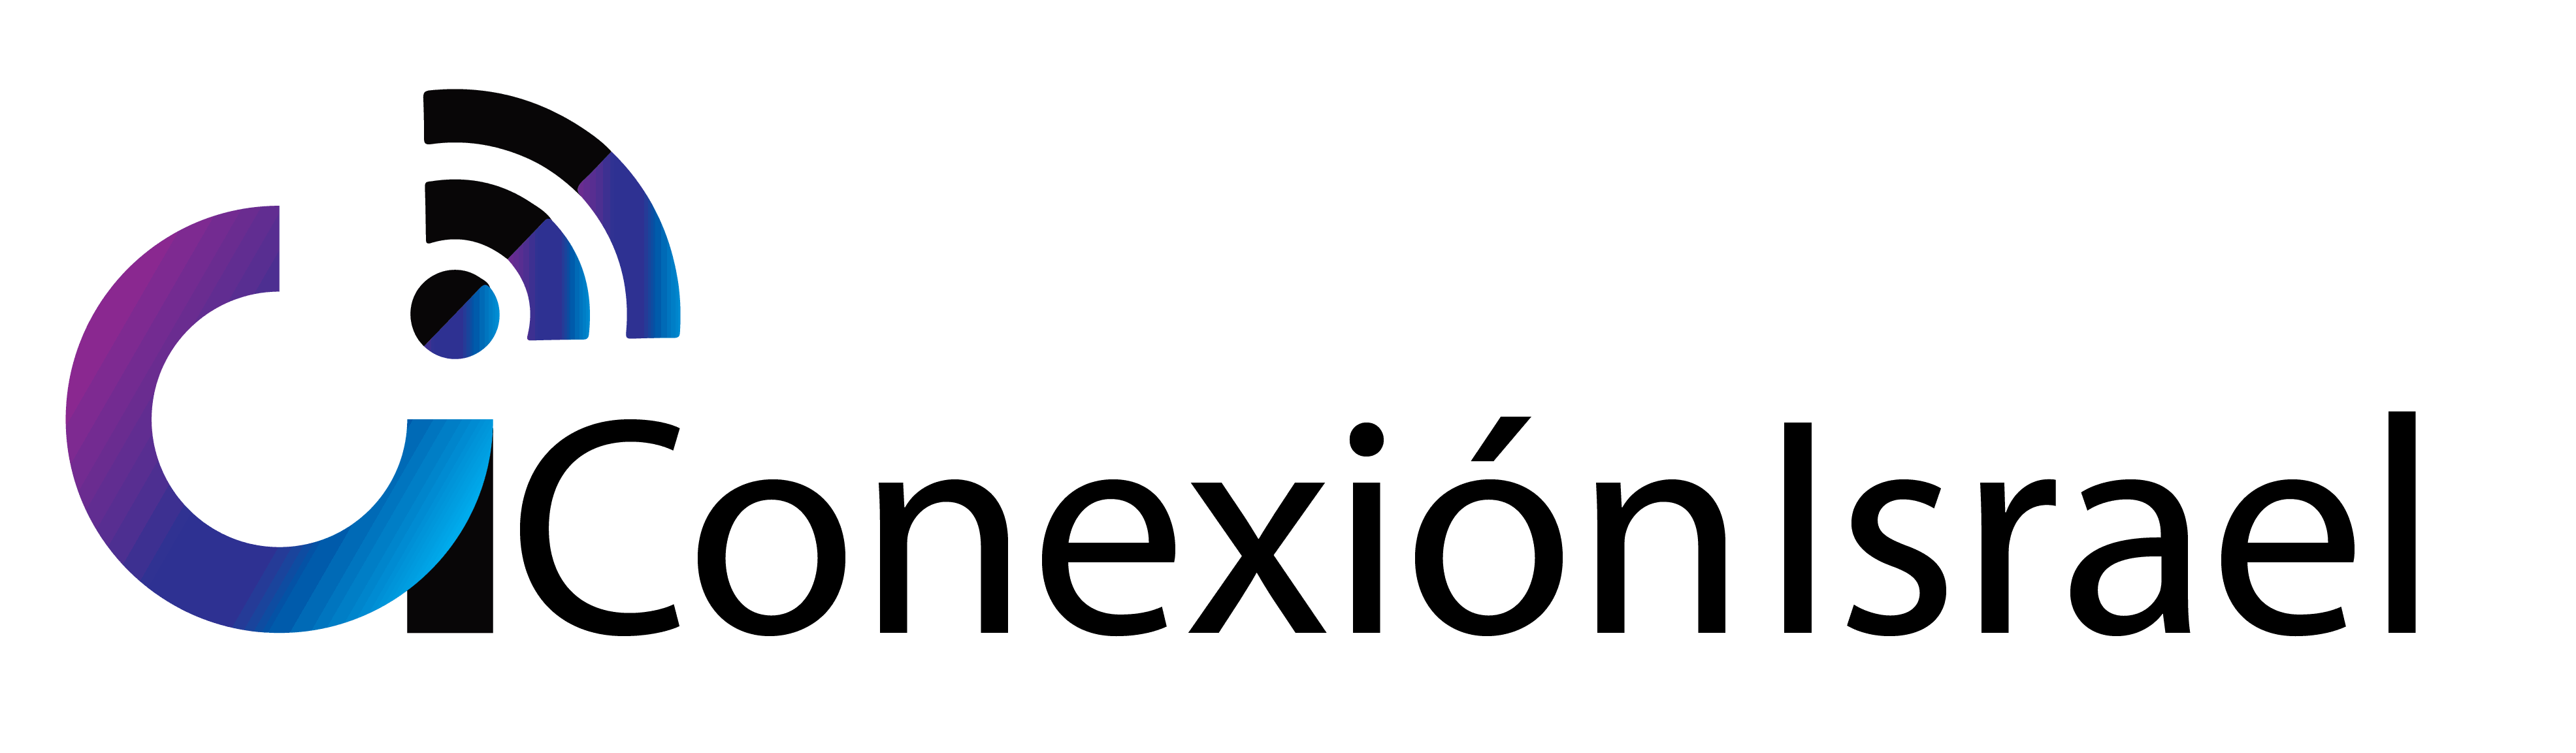 conexion israel logo